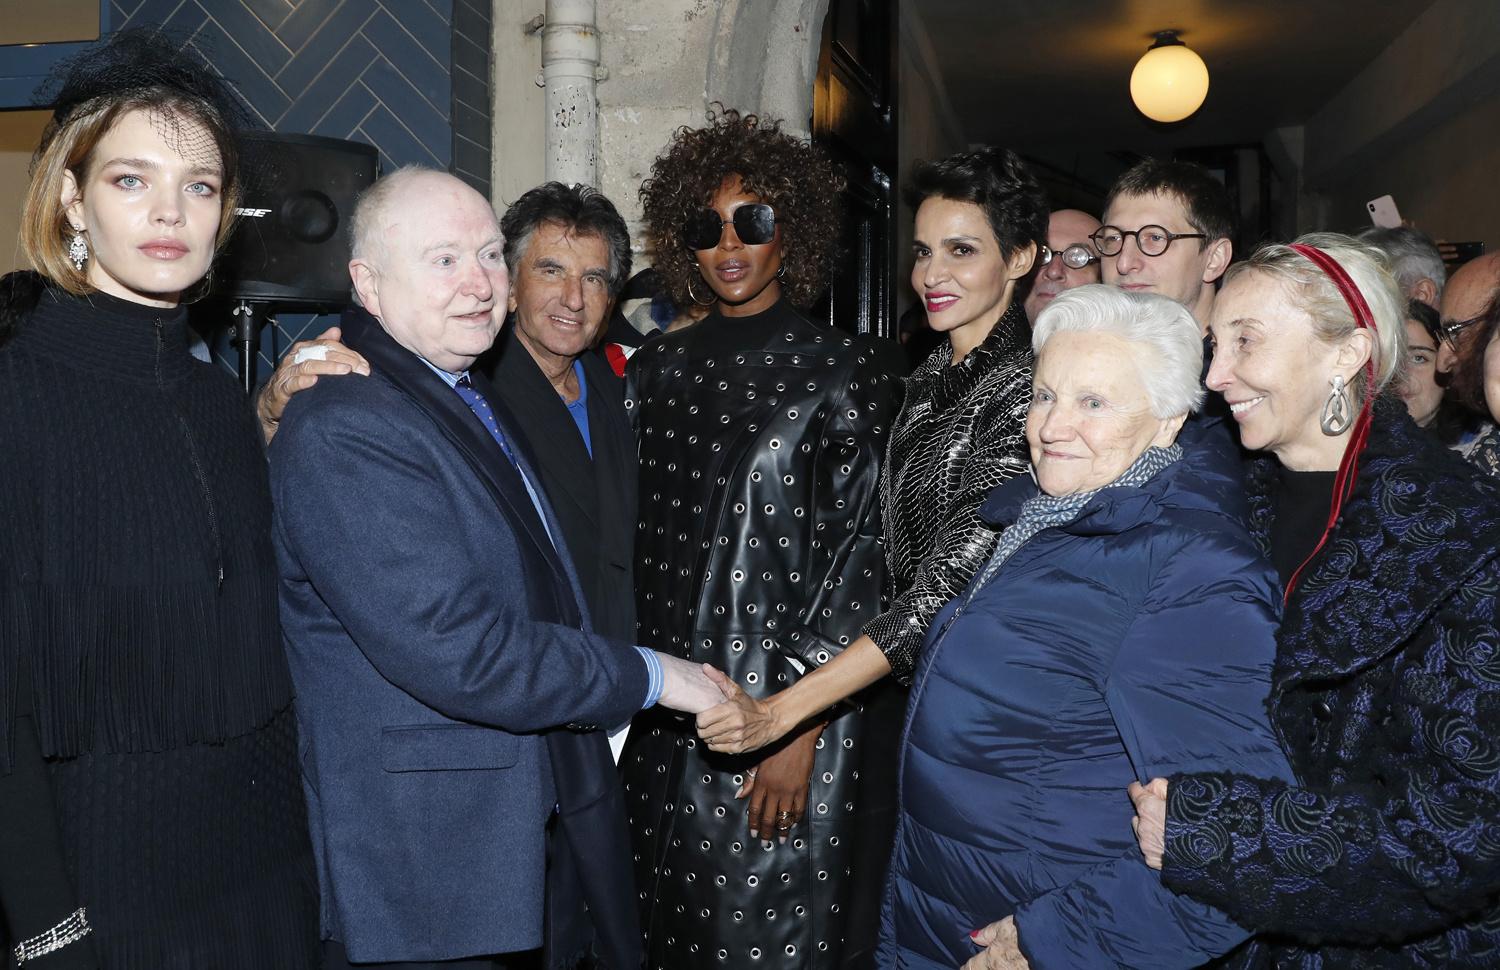 Christophe Von Weyhe entouré de Natalia Vodianova, Jack Lang, Naomi Campbell, Farida Khelfa, une invitée et Carla Sozzani lors de l'hommage à Azzedine Alaia dans le cadre de la Fashion Week de Paris, le 20 janvier 2019 à Paris, France.